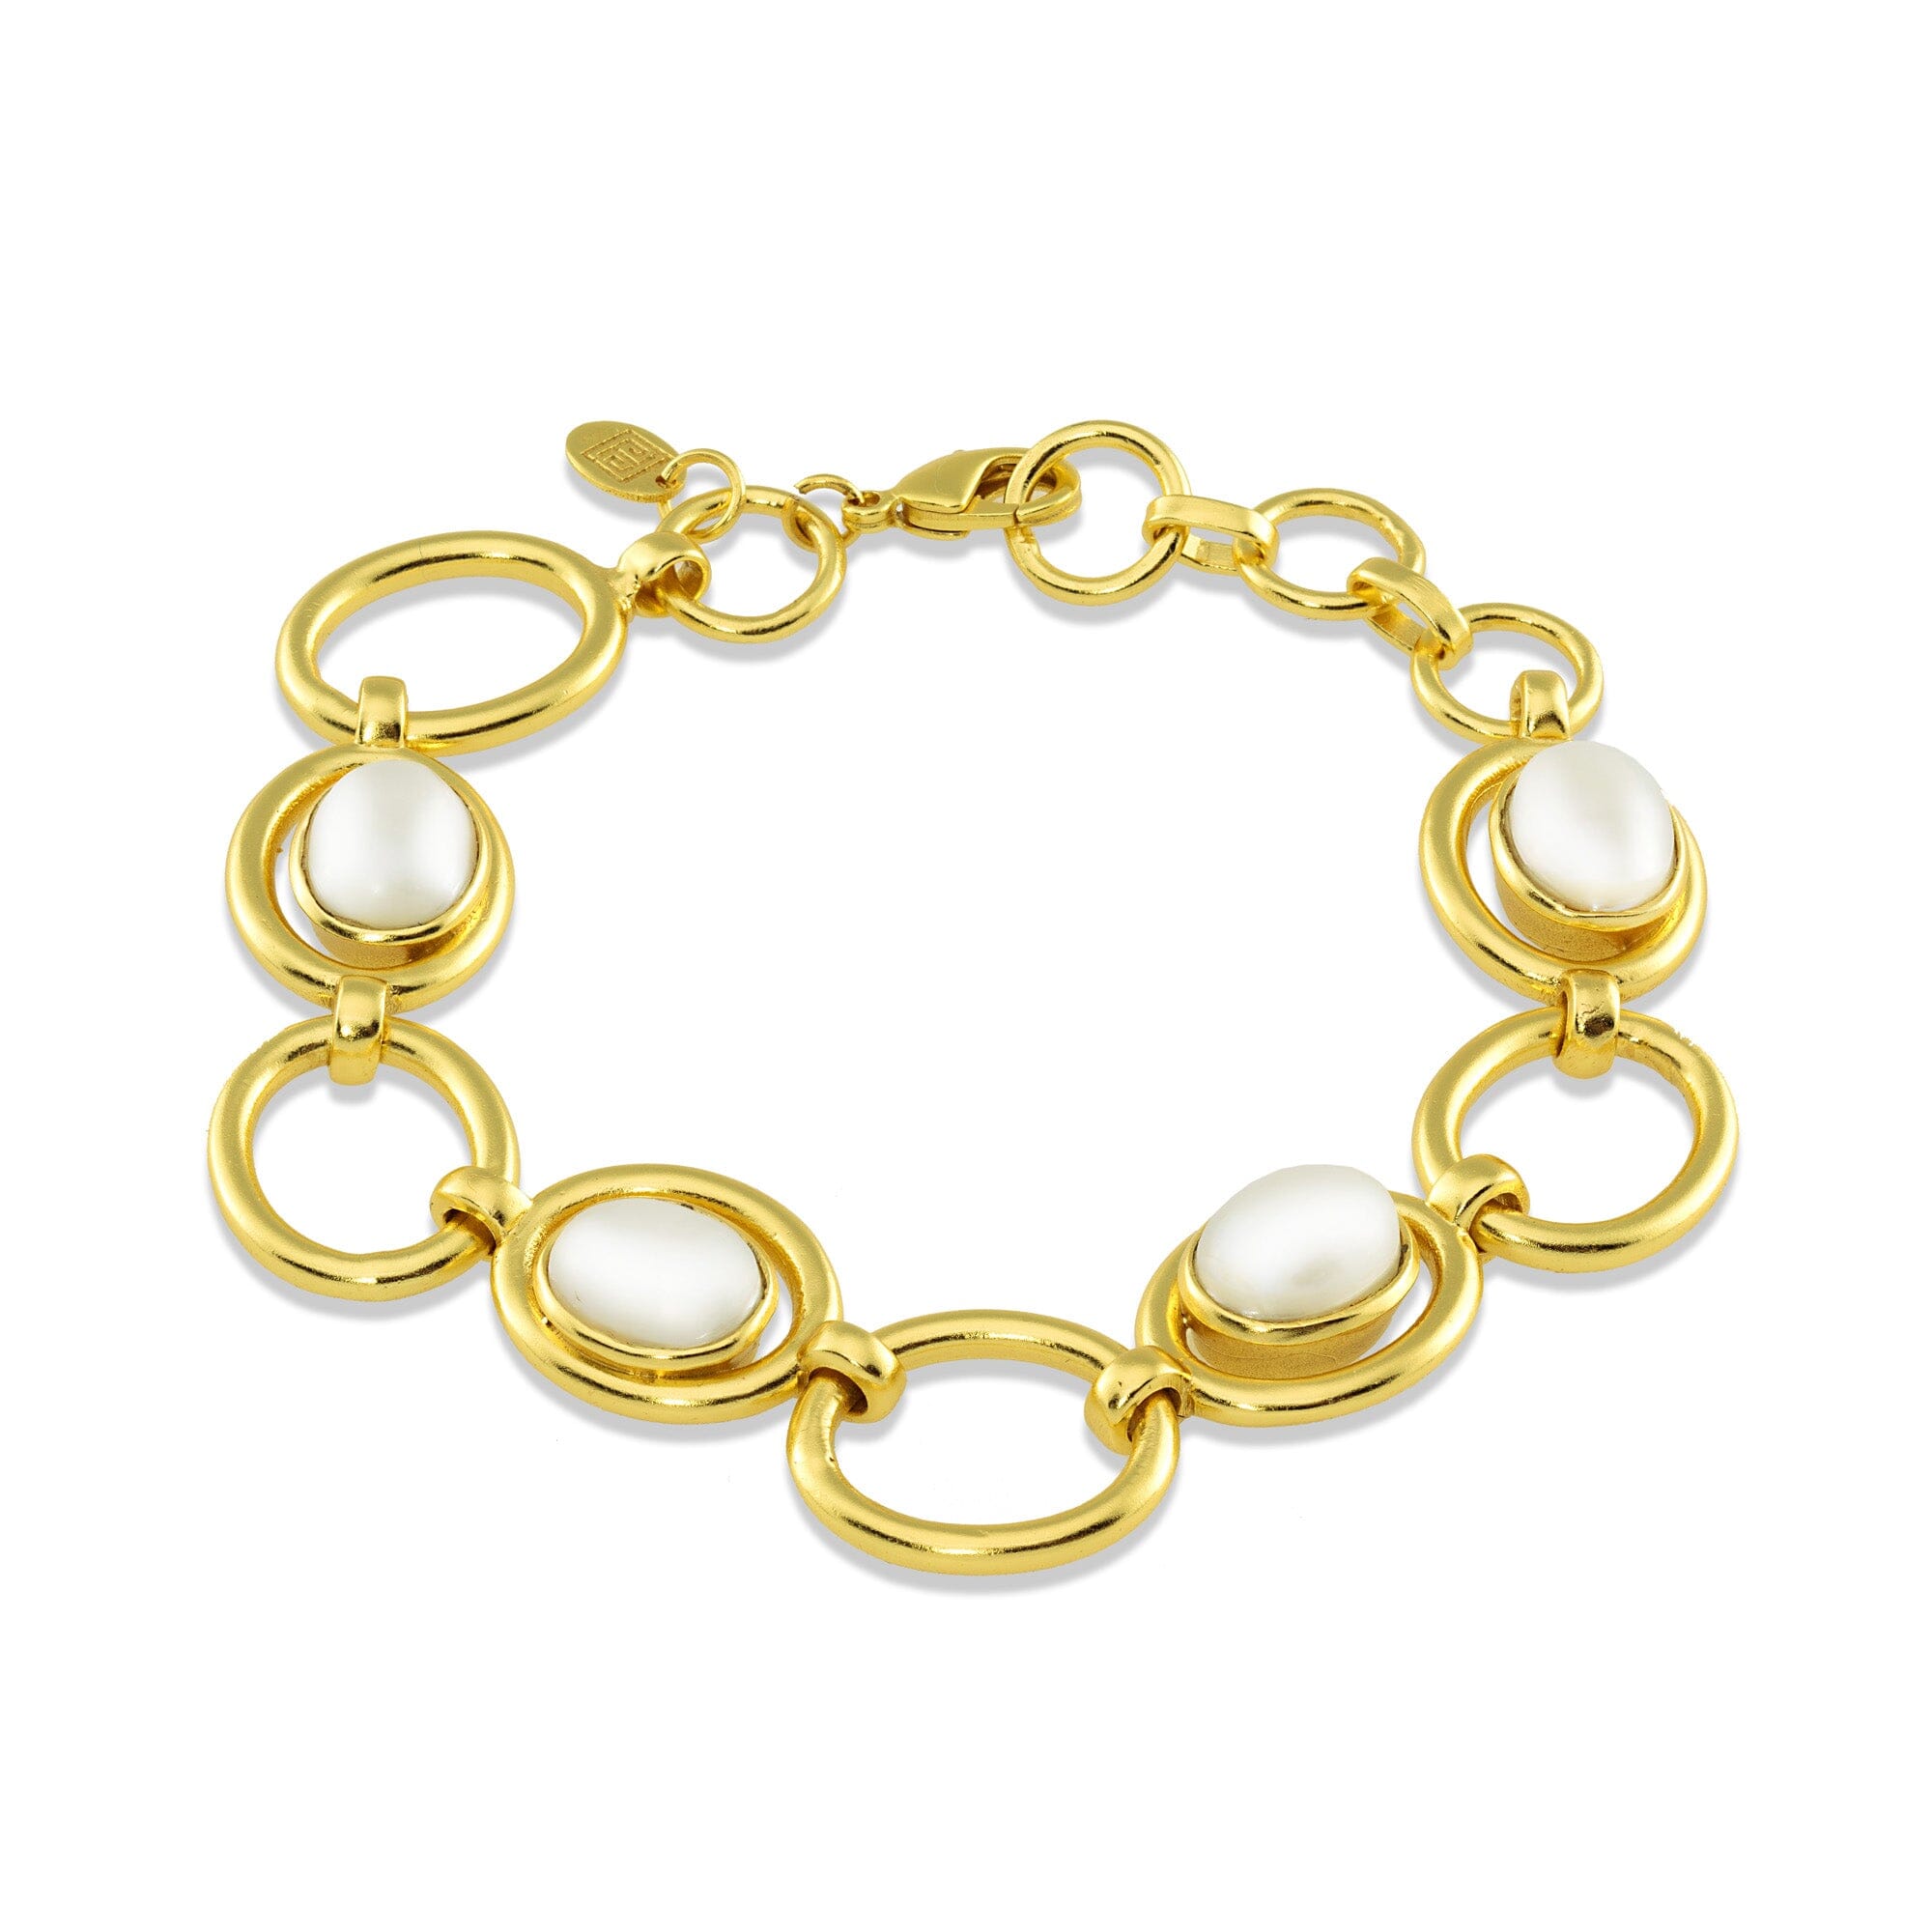 1 - 4 pearl bracelet Jimena Alejandra 